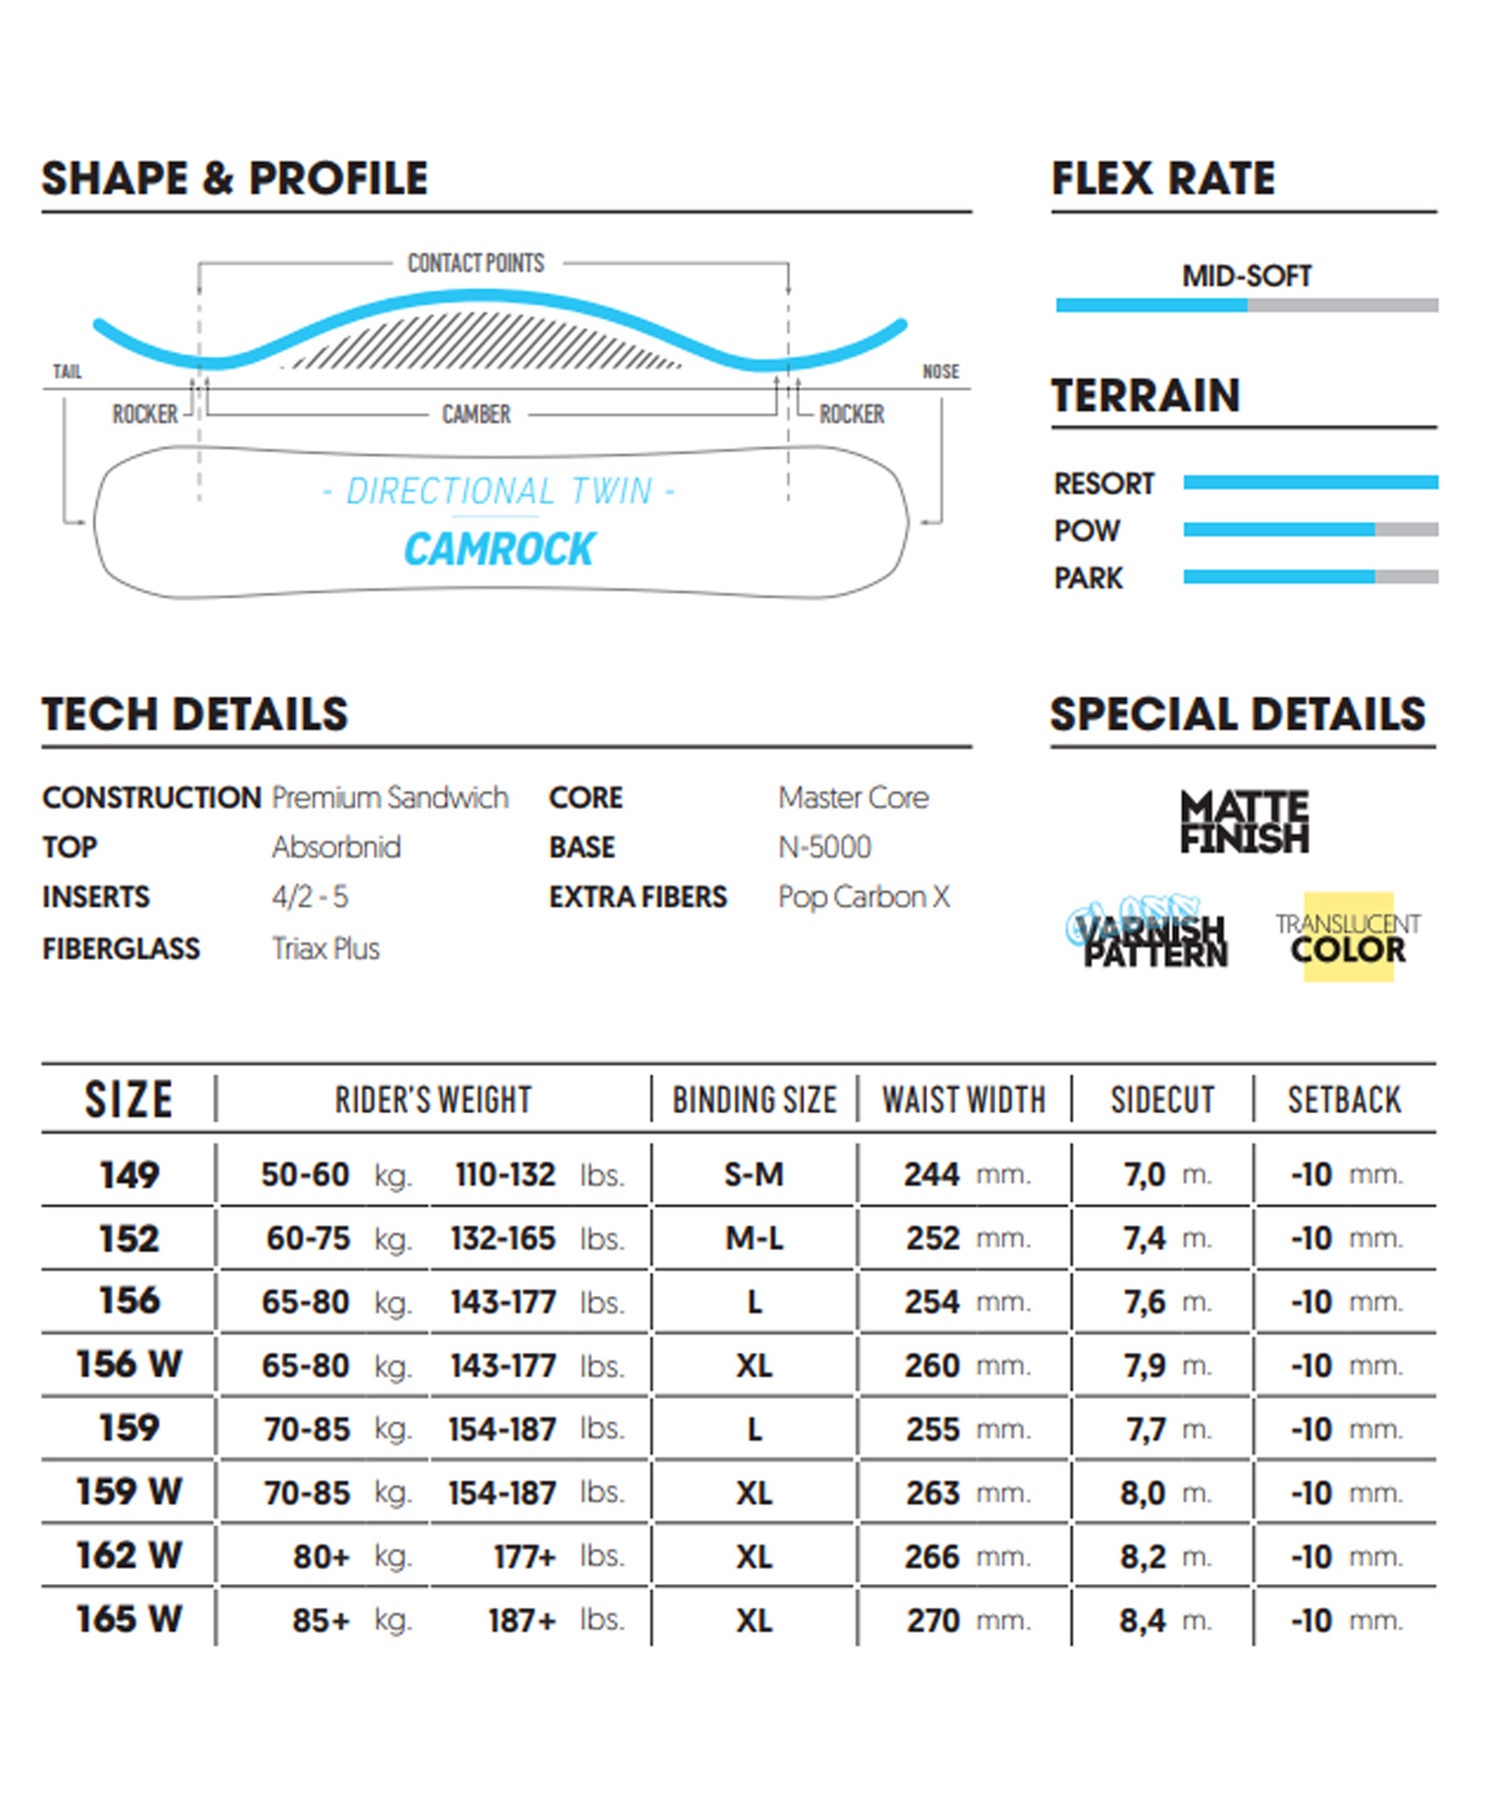 スノーボード 板 メンズ NIDECKER ナイデッカー Merc 23-24モデル ムラサキスポーツ KK B10(Merc-149cm)